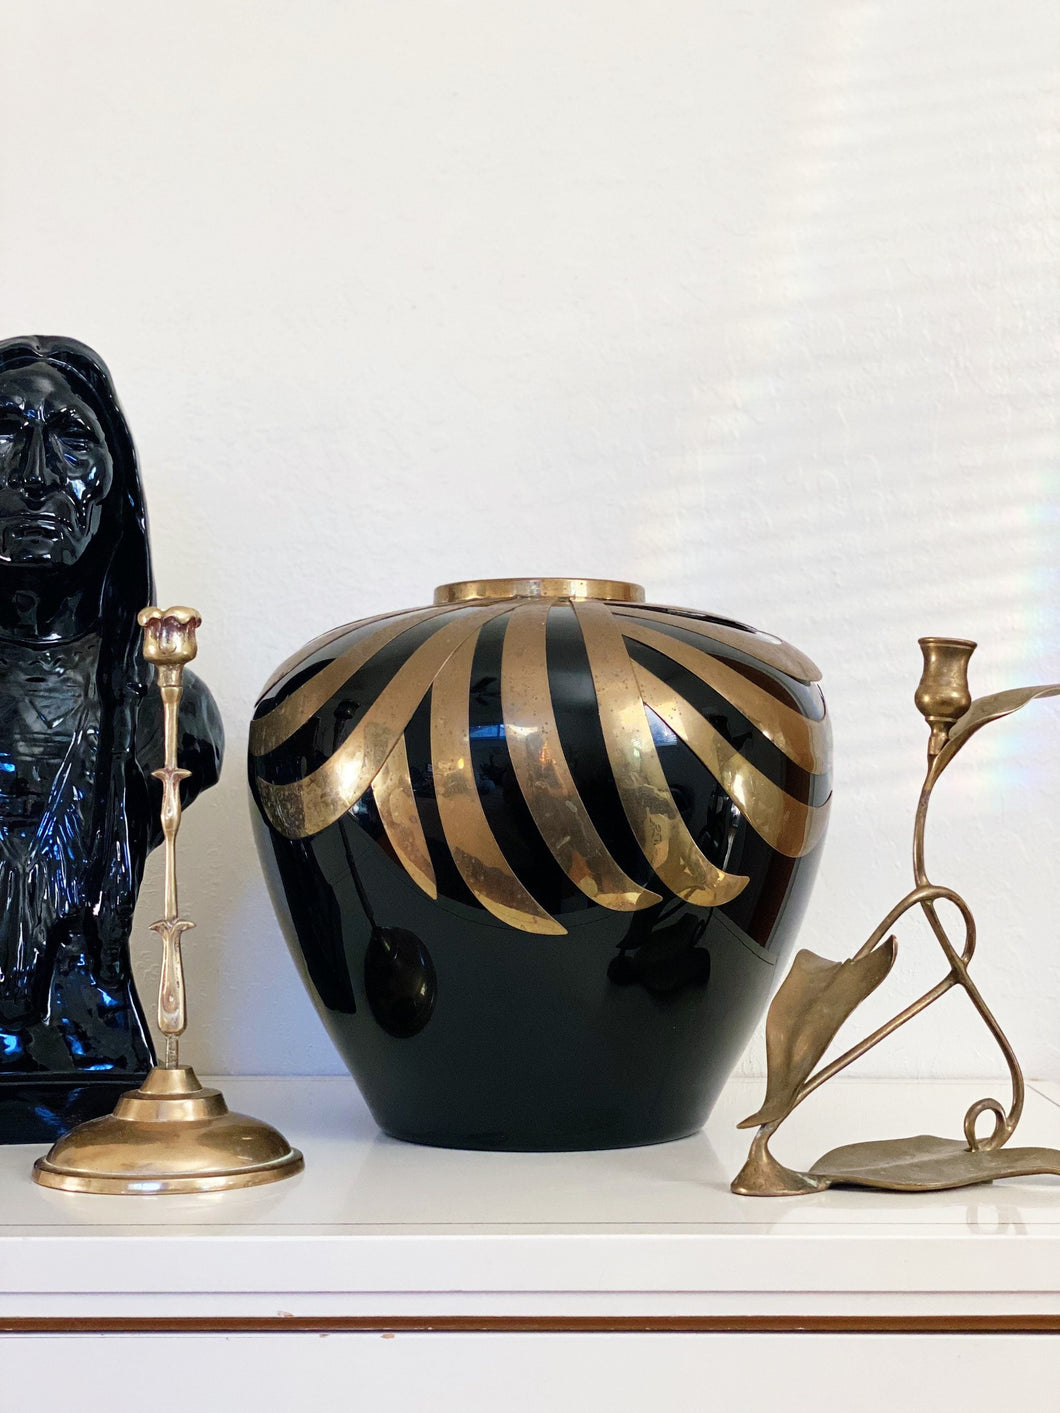 Extra Large Black Porcelain Ceramic Round Orb Vase with Brass Metal Art Deco Design - Vintage Haeger Style Vessel